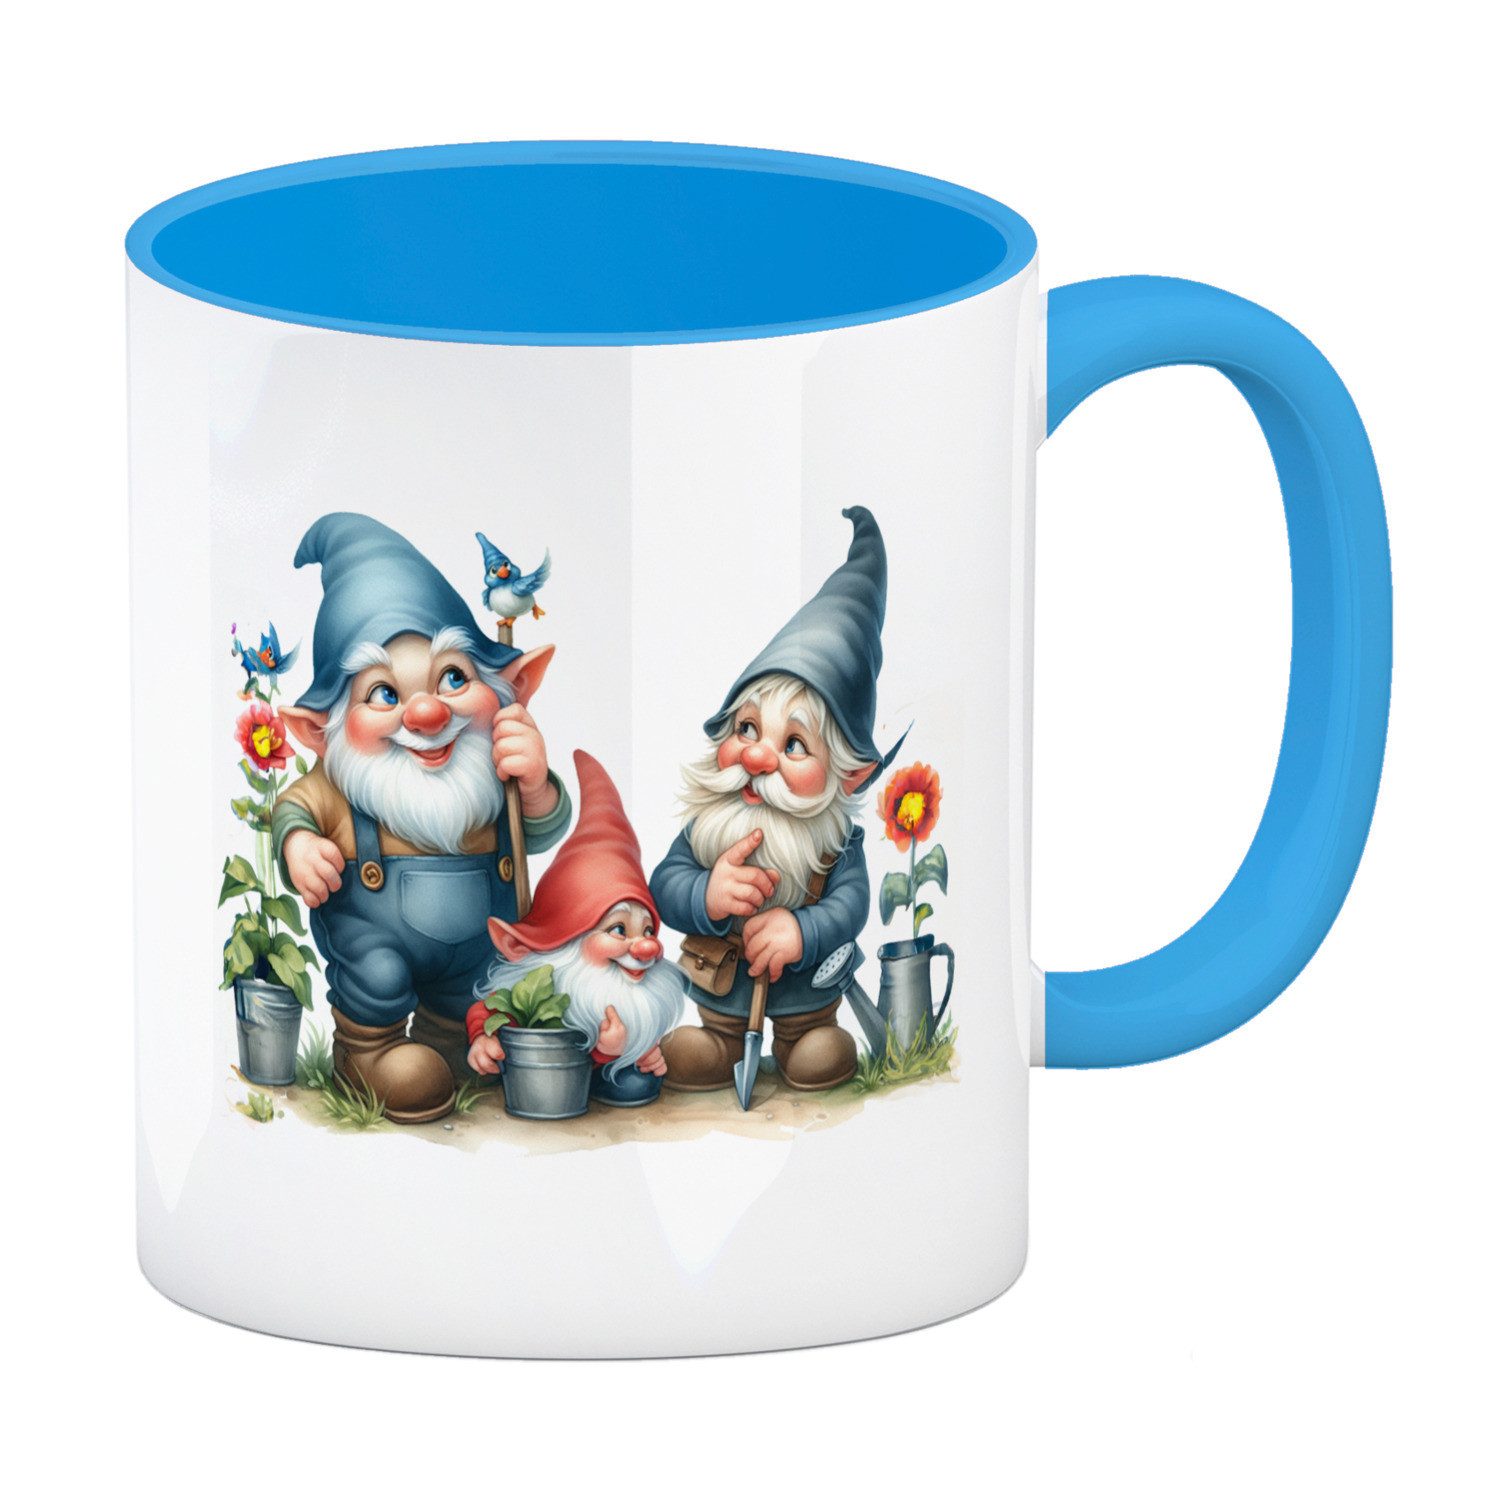 speecheese Tasse Gartenzwerge mit Zipfelmützen Kaffeebecher in hellblau